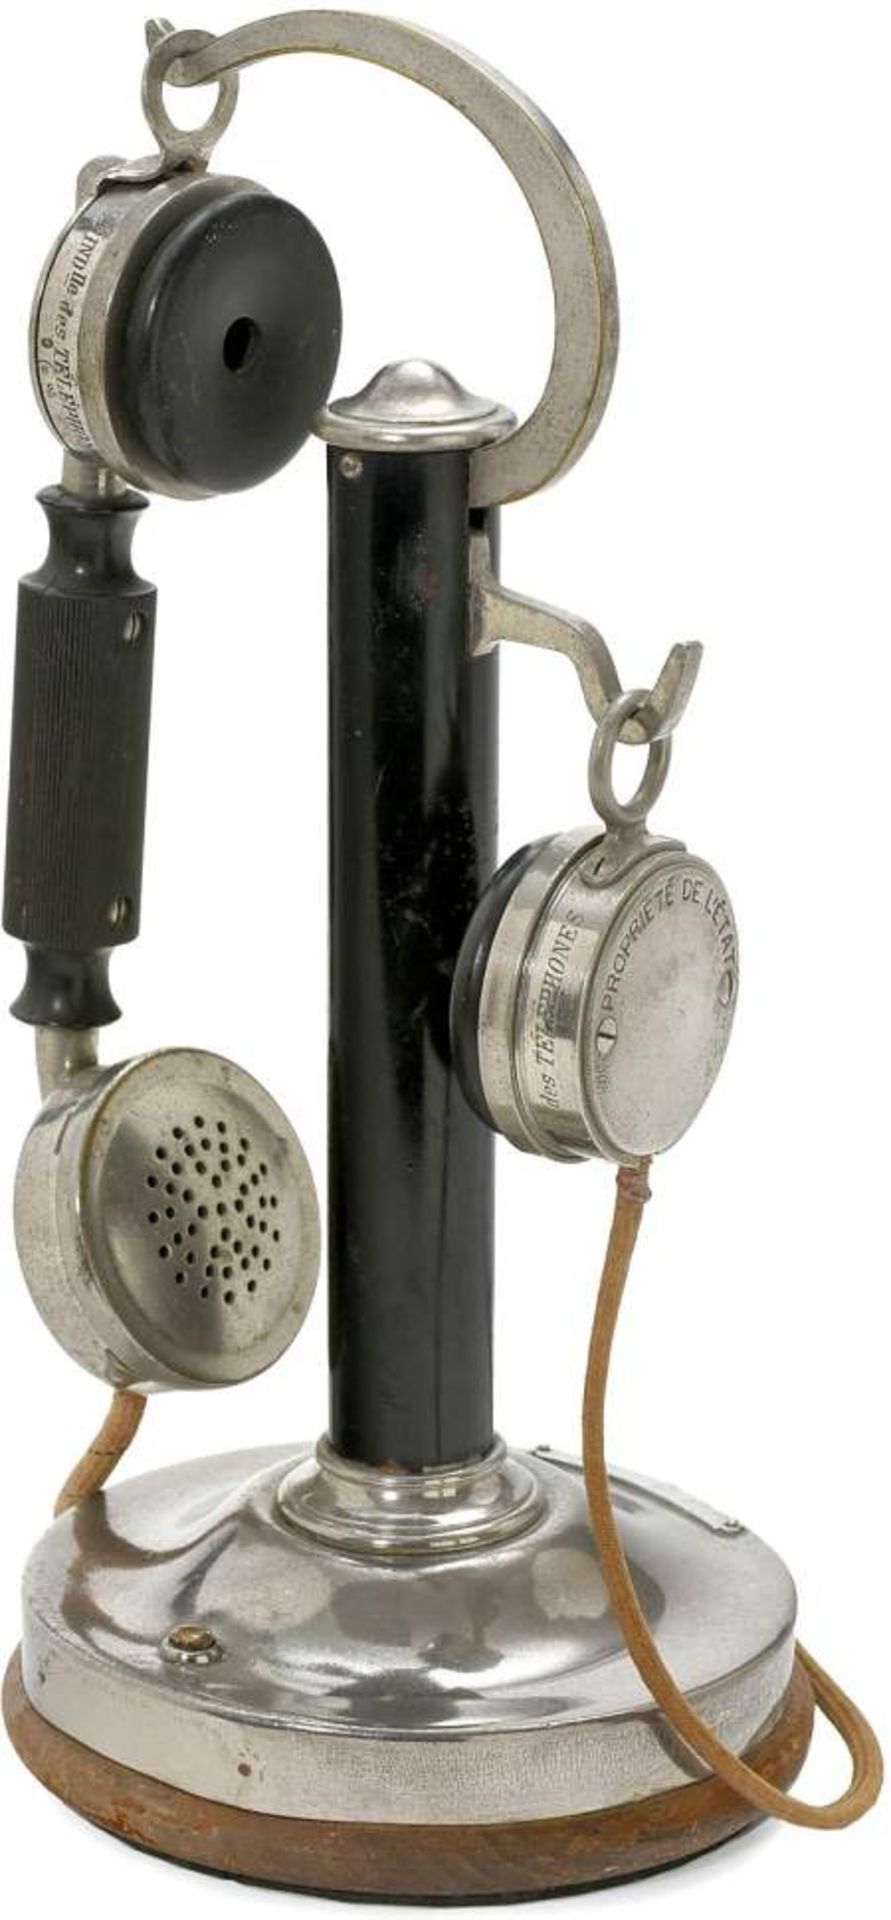 French Candlestick Telephone by "SIT", c. 1928
"Société Industrielle des Téléphones - Paris",